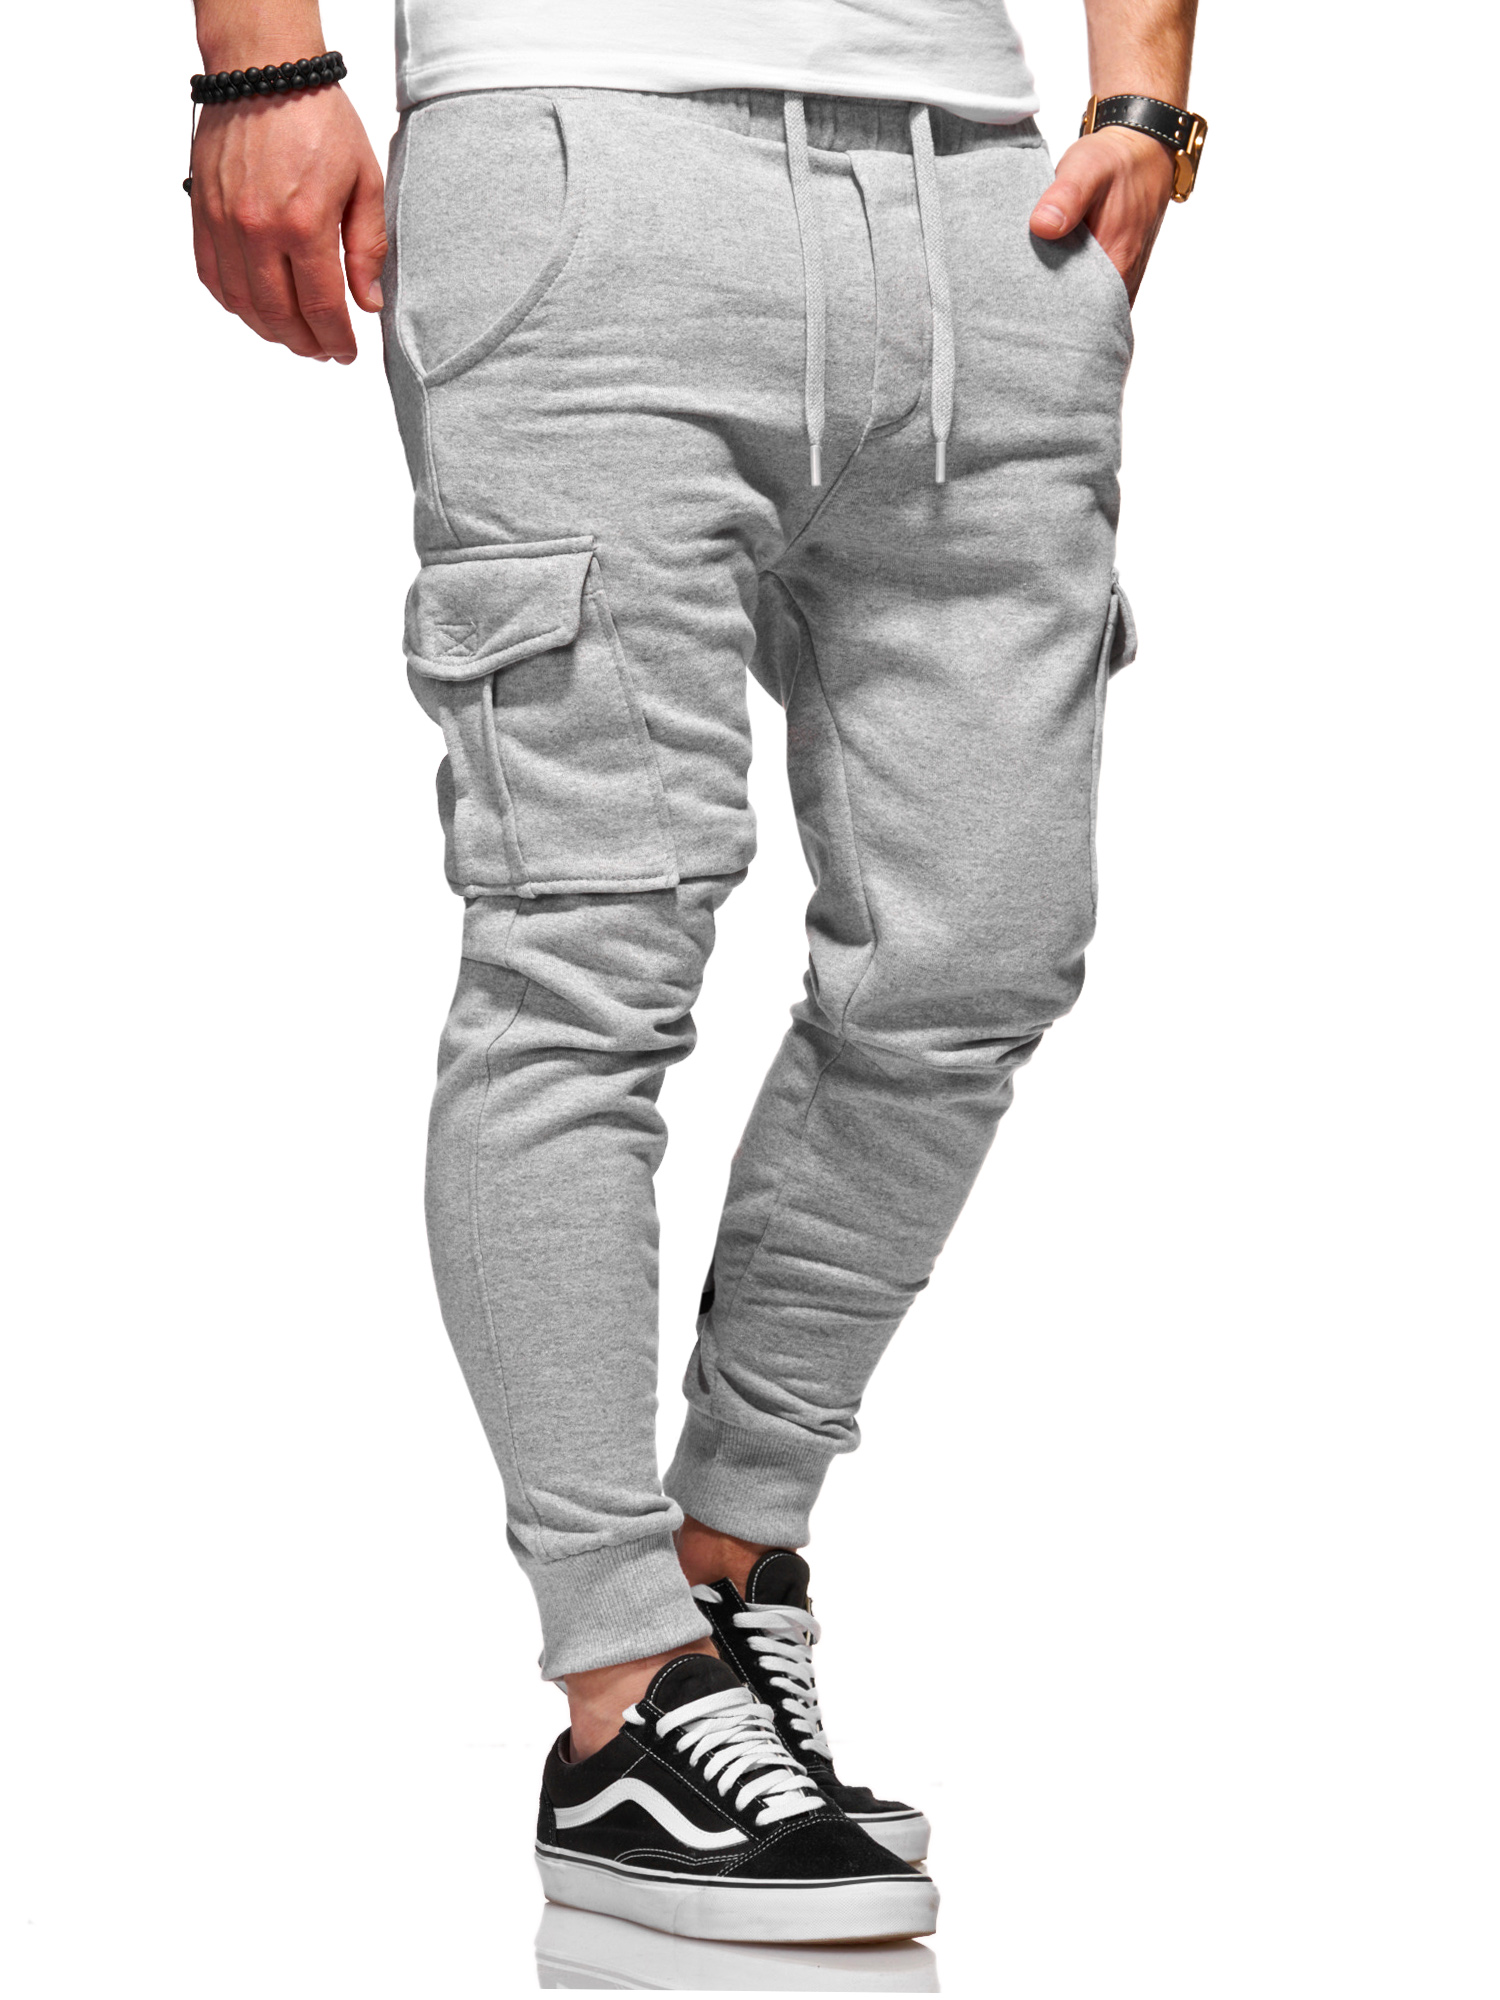 Тканевые брюки behype Jogging Combat, серый